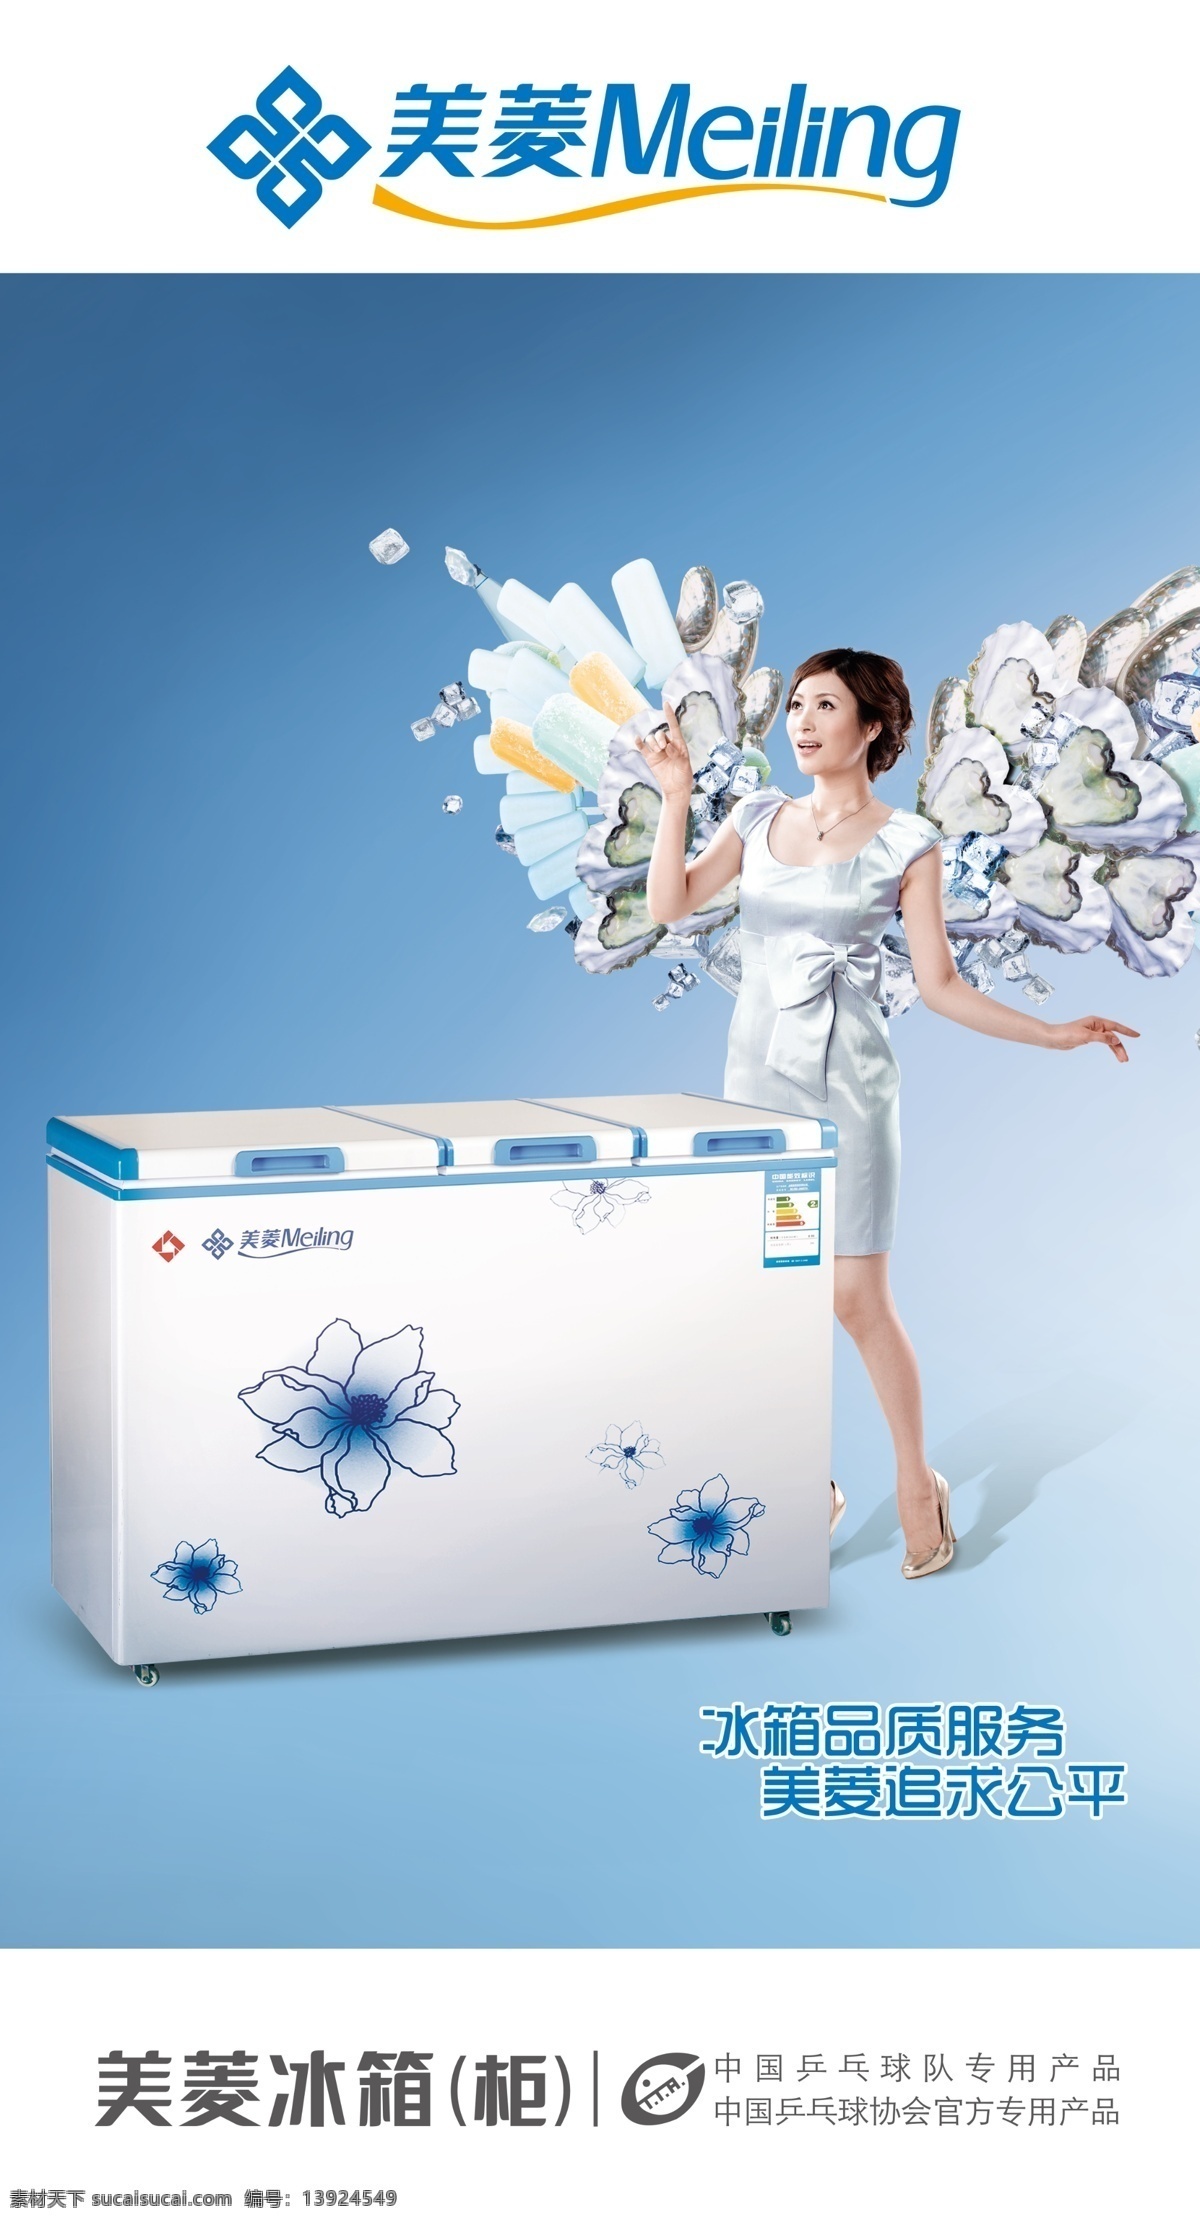 冰柜 翅膀 广告设计模板 蓝色 美菱 美女 源文件 模板下载 美菱冰柜